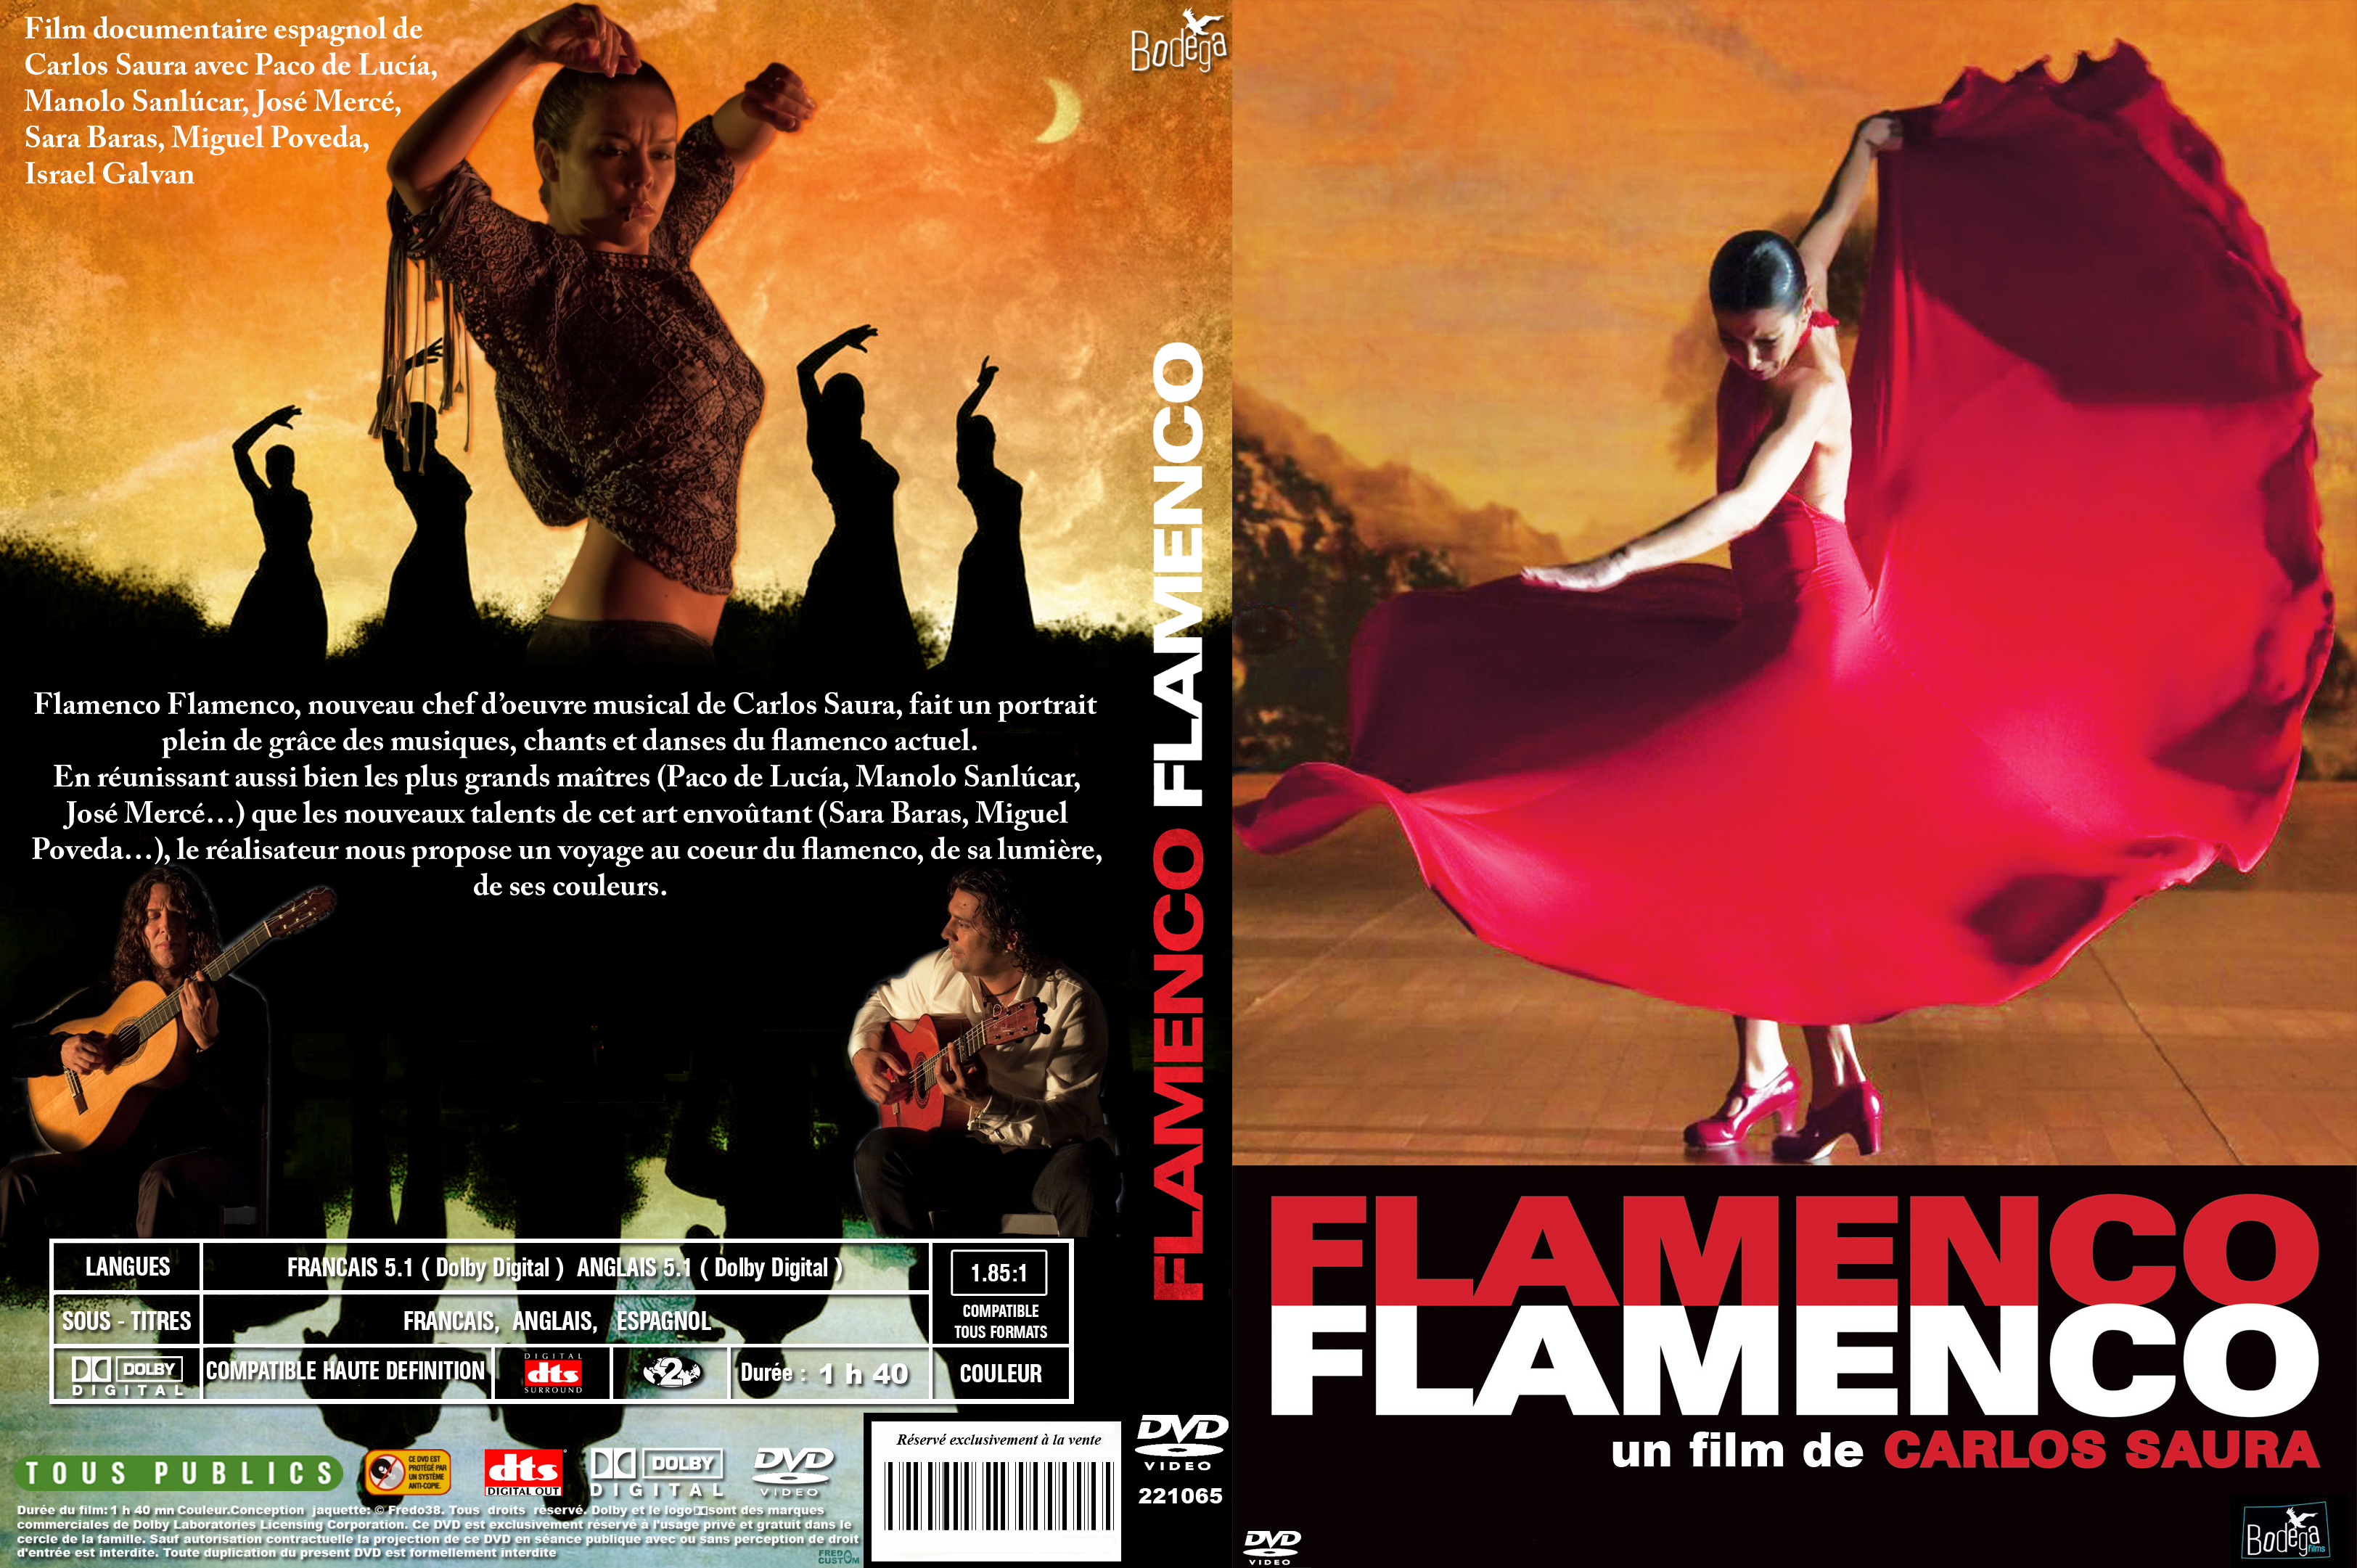 Jaquette DVD Flamenco flamenco custom